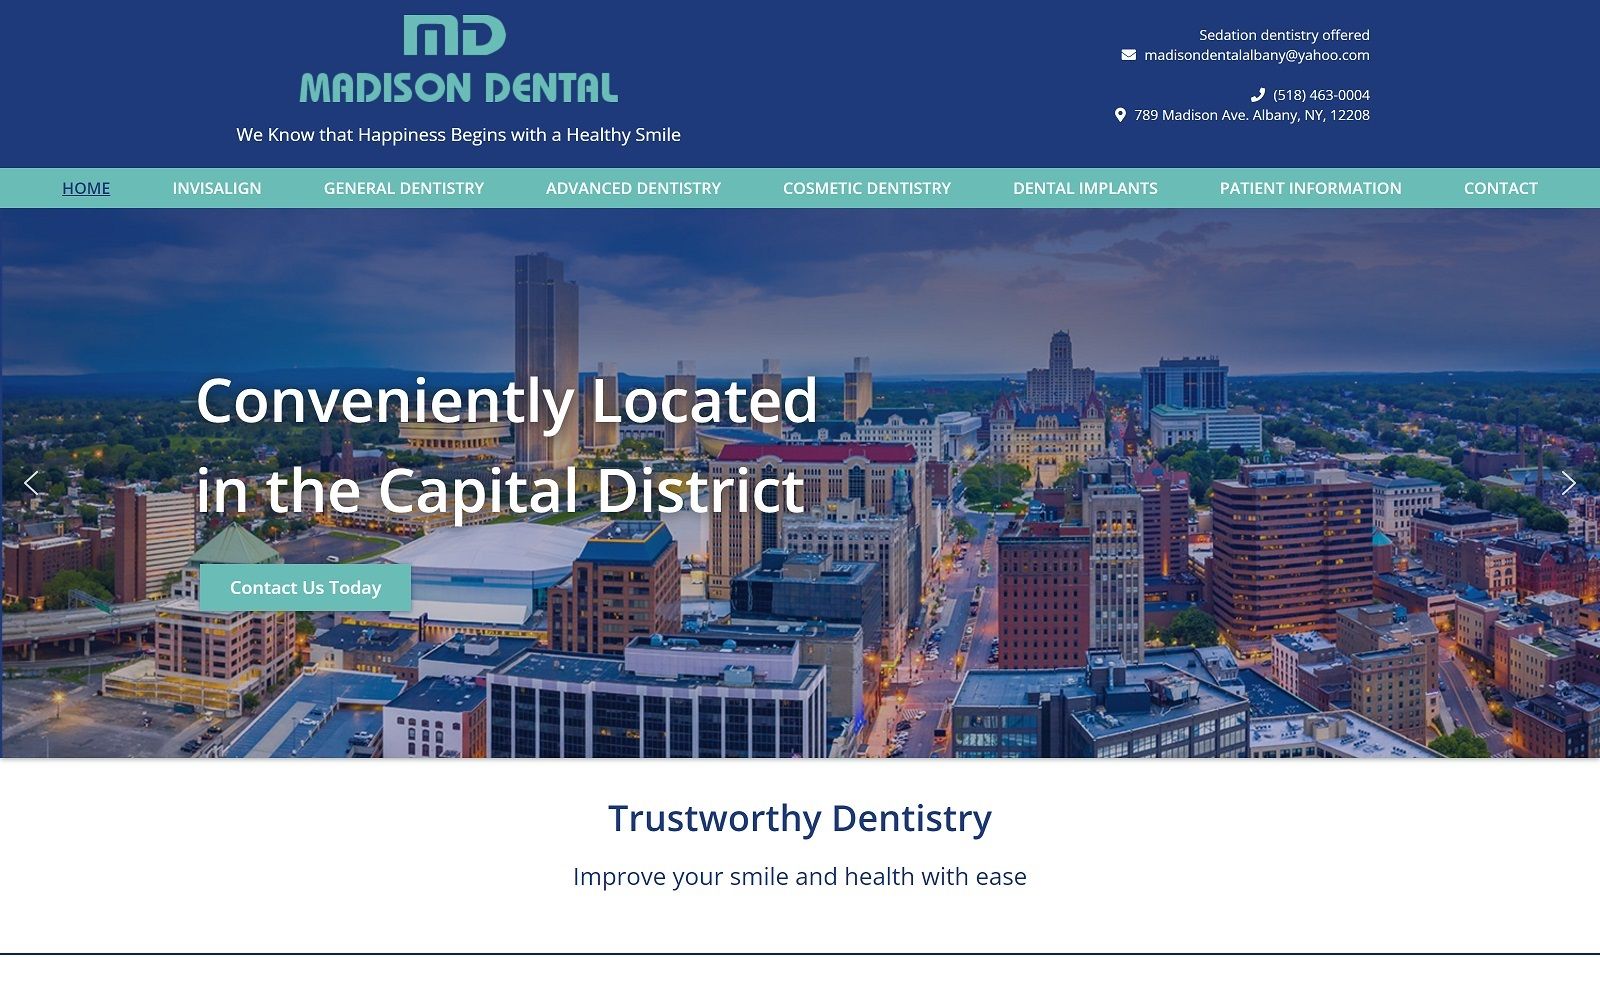 The screenshot of madison dental madisondentalalbany. Com website